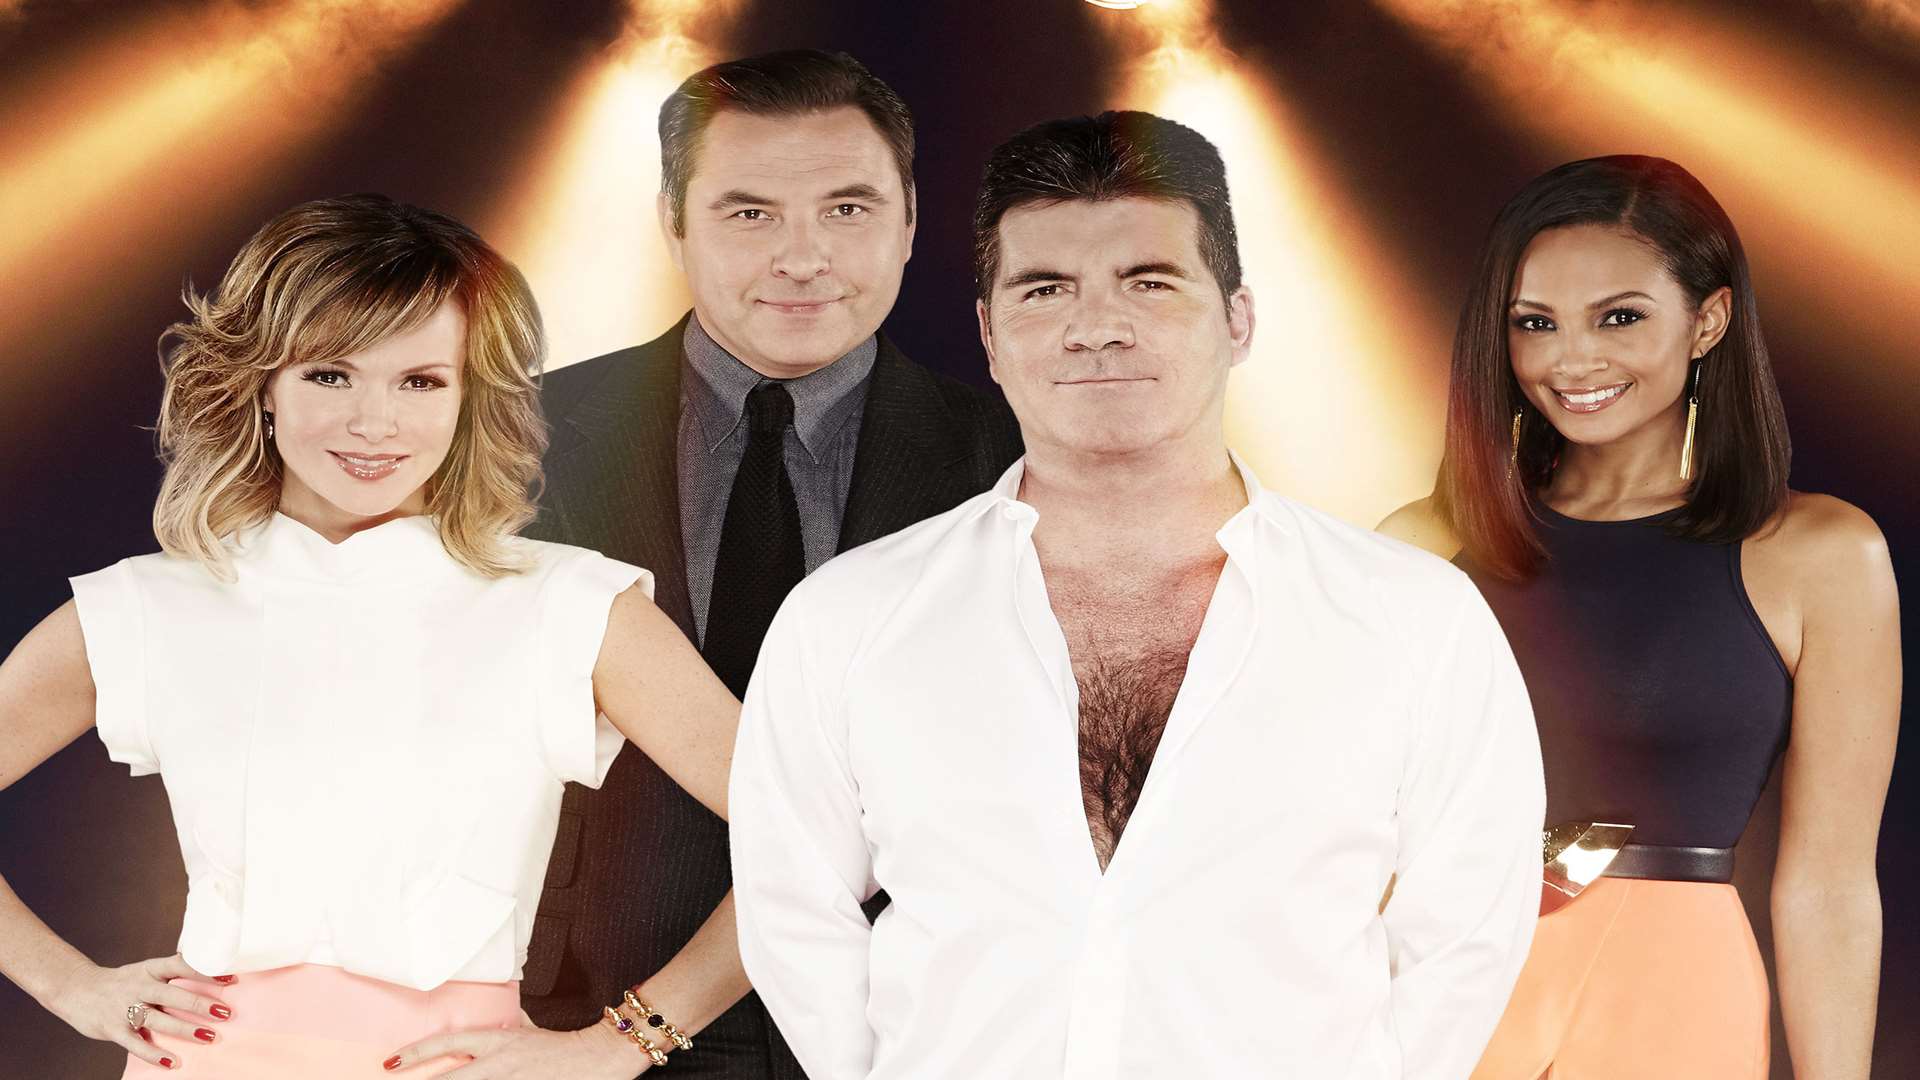 Britain's Got Talent judges Amanda Holden, David Walliams, Simon Cowell and Alesha Dixon